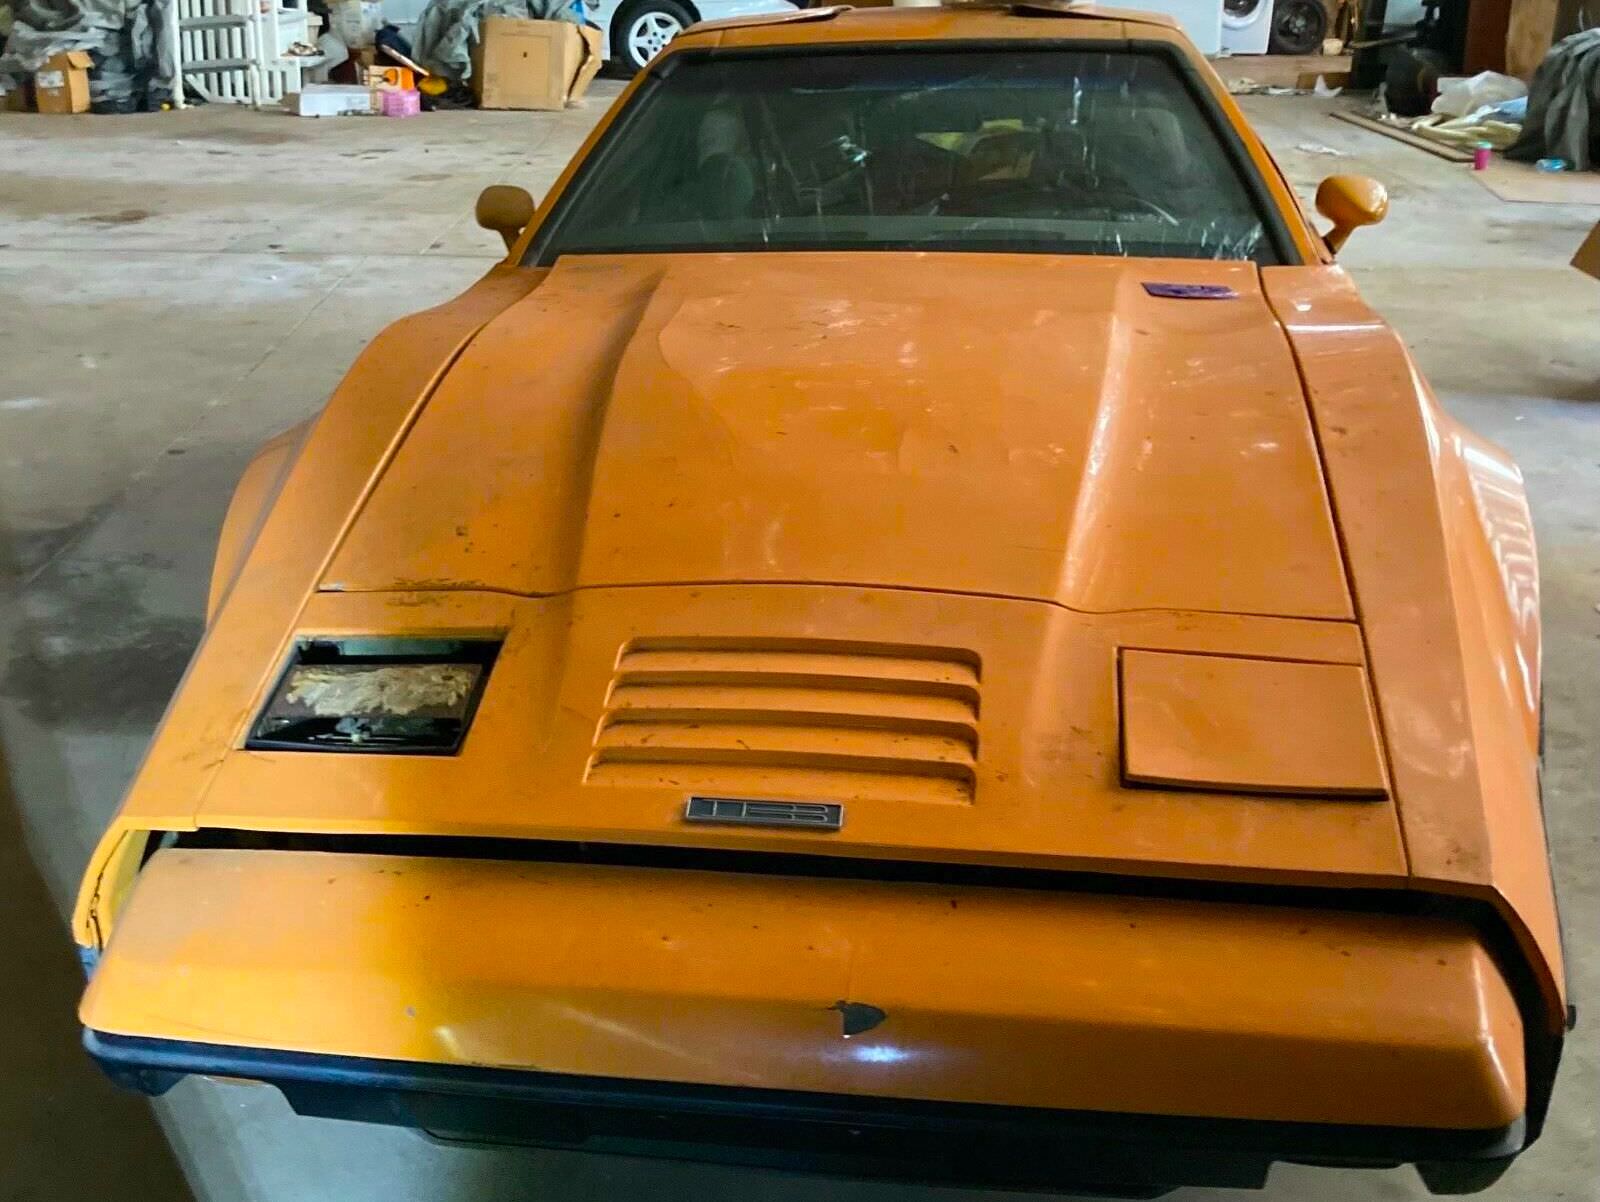 A Rare Bricklin SV-1 Warehouse Find – The “Canadian DeLorean” via @Silodrome